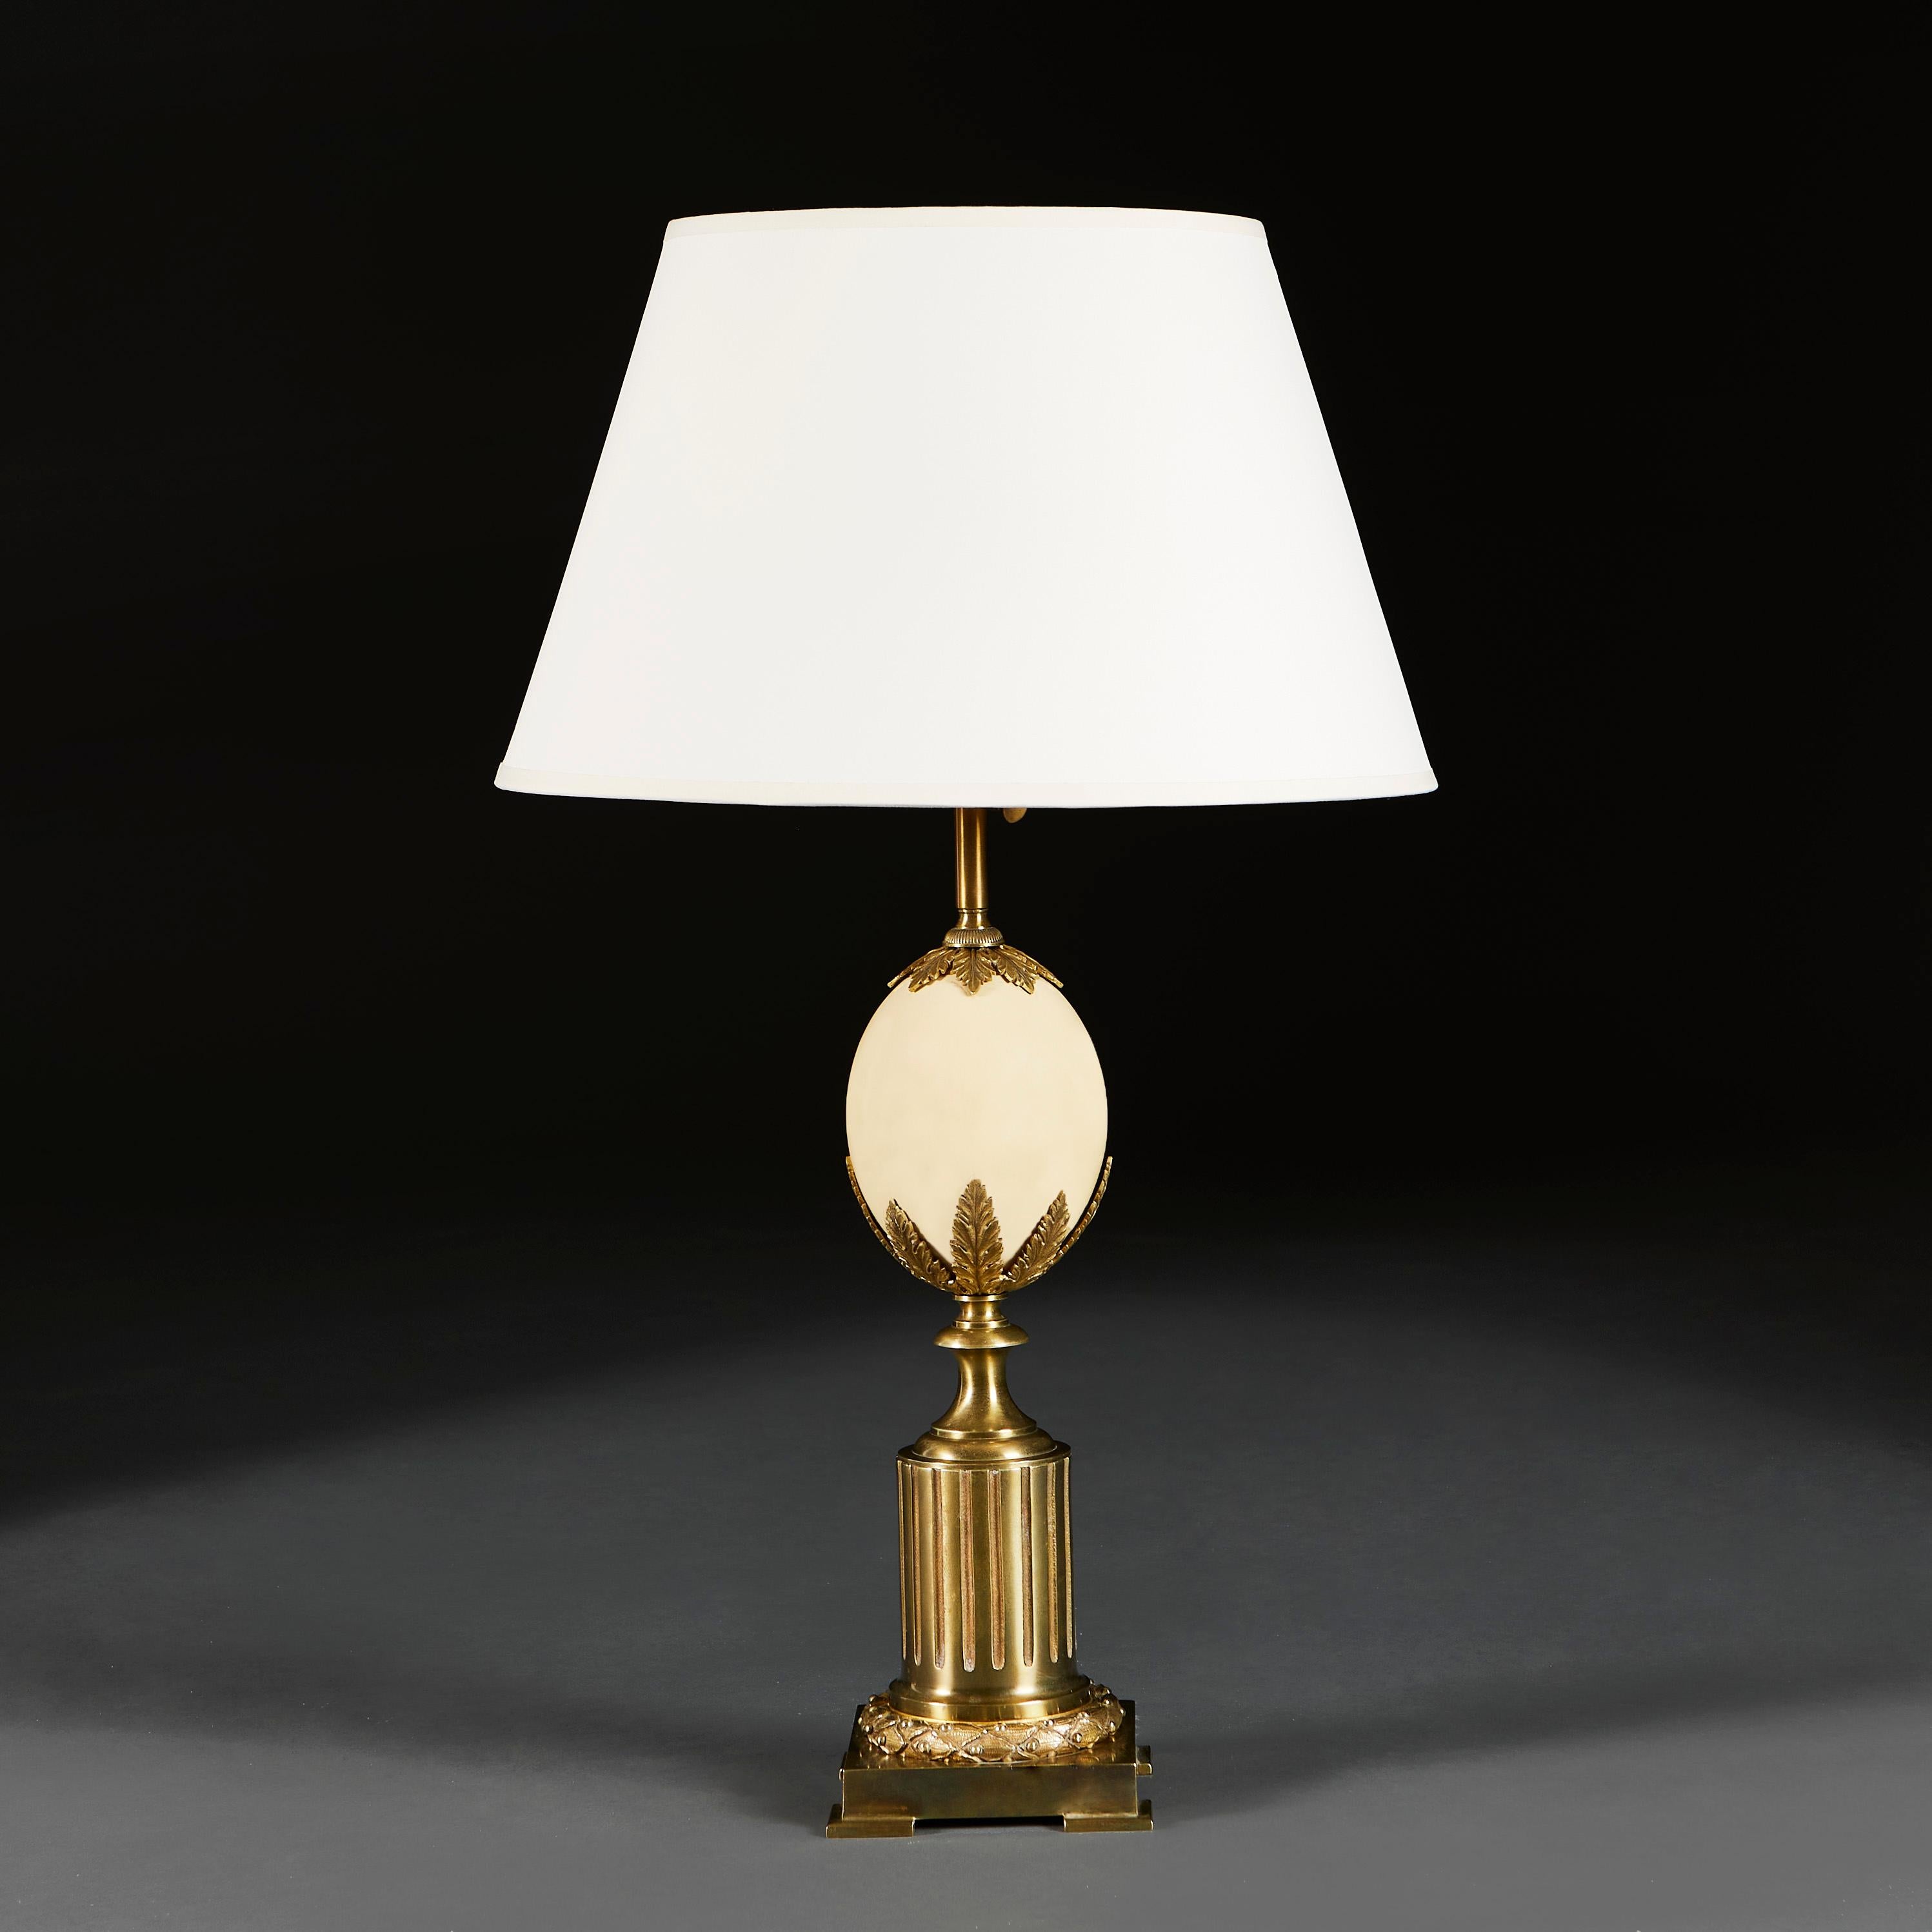 France, vers 1940

Une grande lampe en laiton avec un oeuf d'autruche soutenu par une gerbe de feuilles d'acanthe, le tout soutenu par un cylindre à godrons sur une base carrée avec un rond de feuilles de laurier.

Hauteur de la lampe